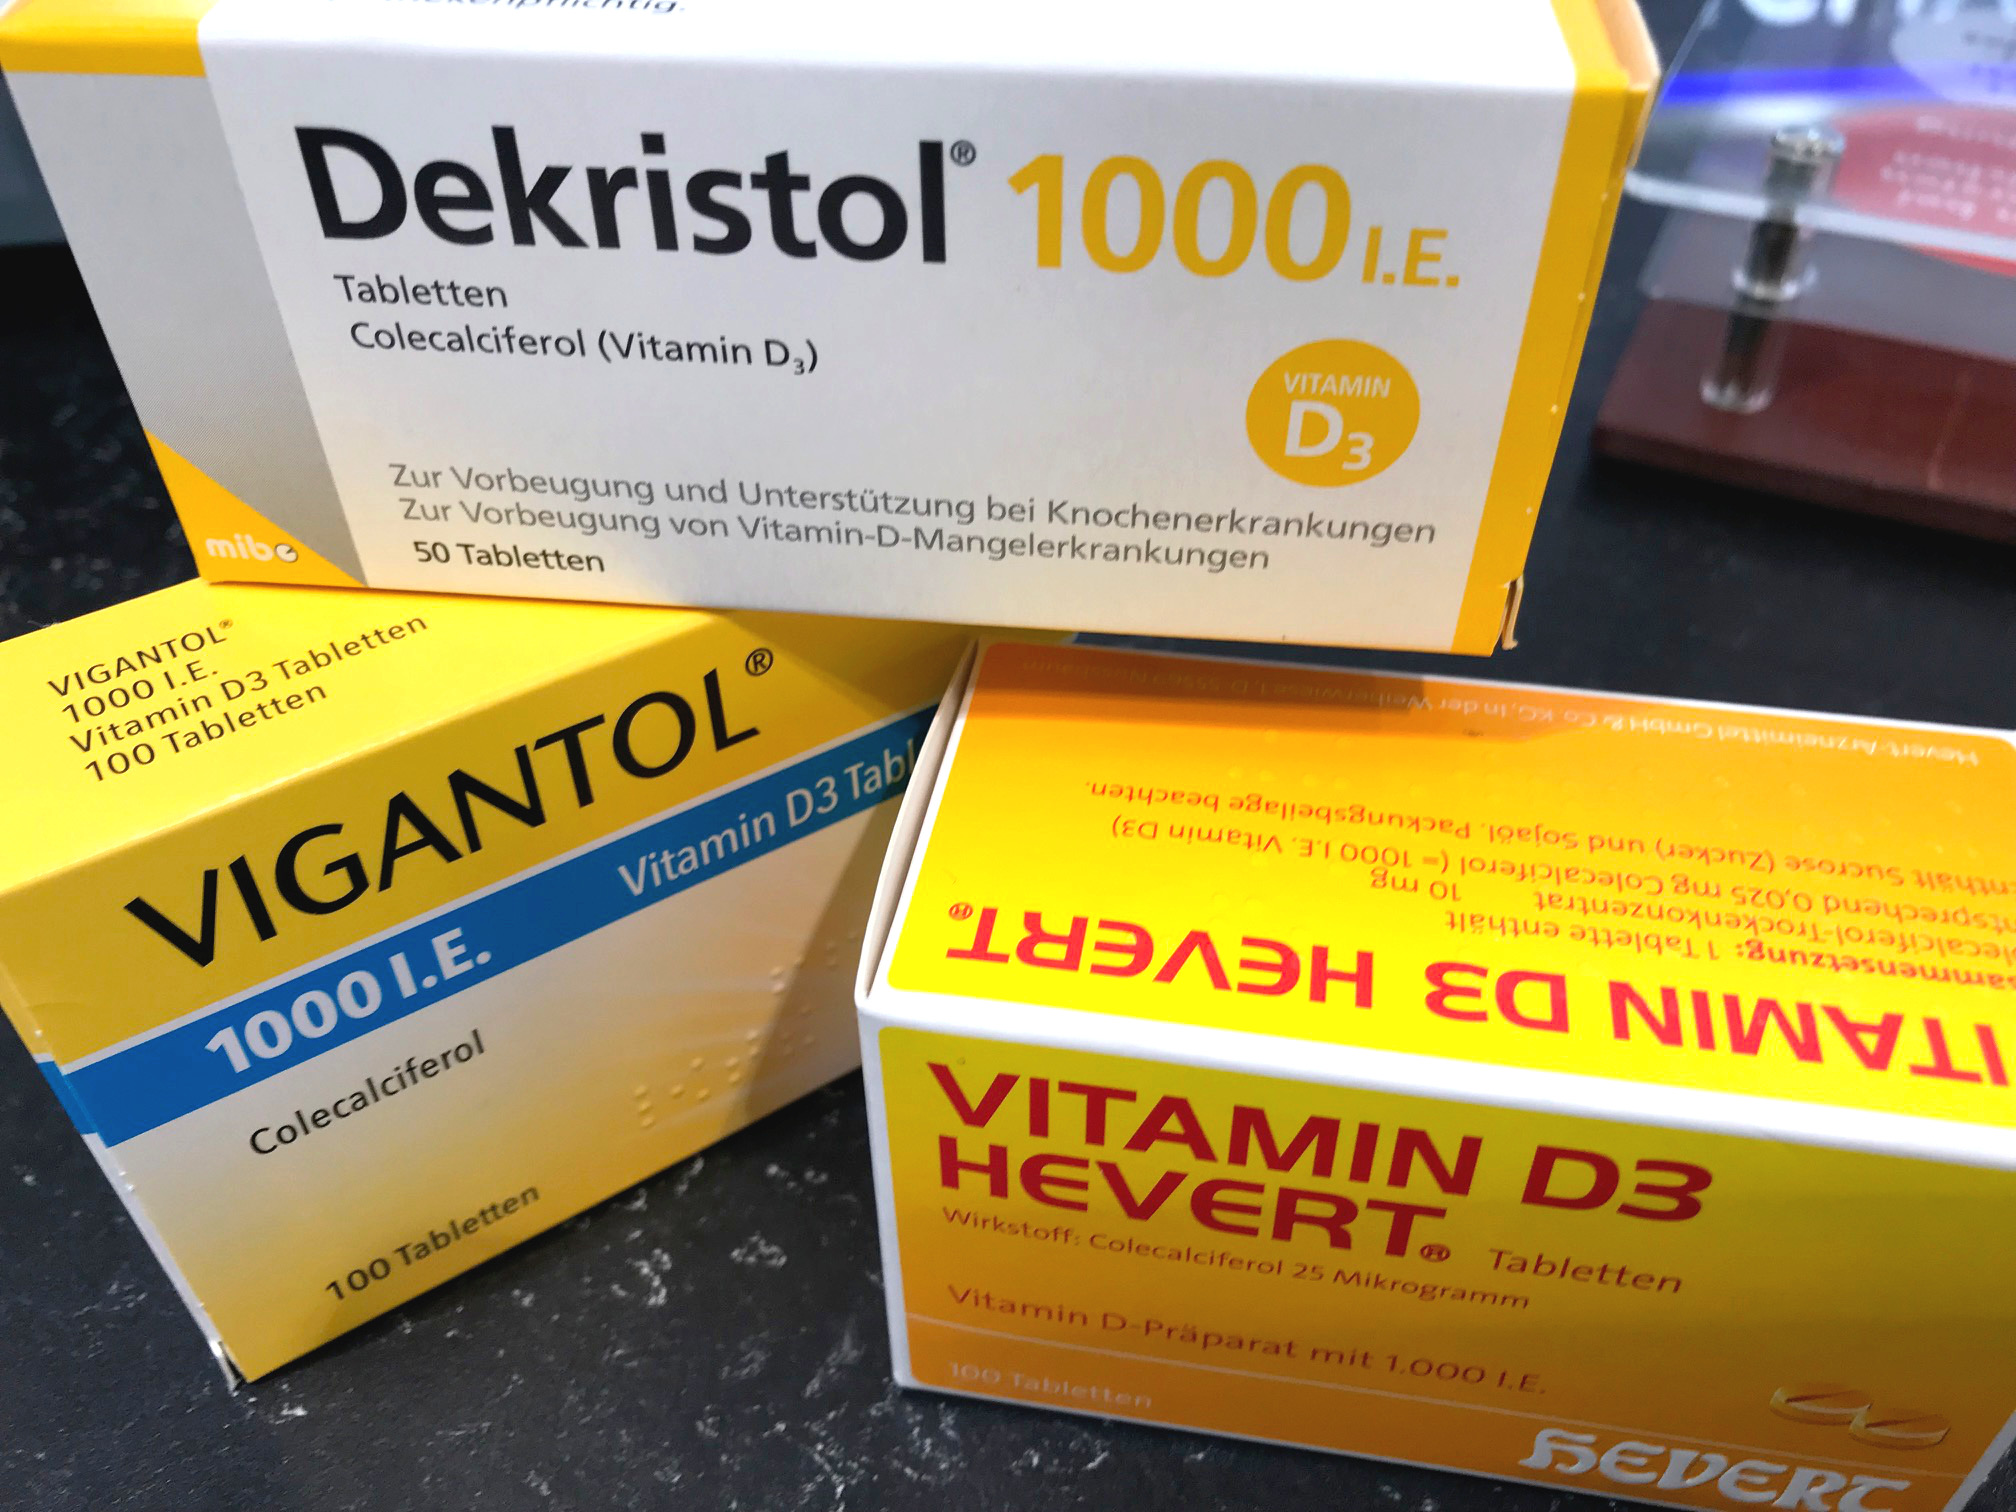 Vitamin D Warentest Rehabilitiert Arzneimittel Apotheke Adhoc